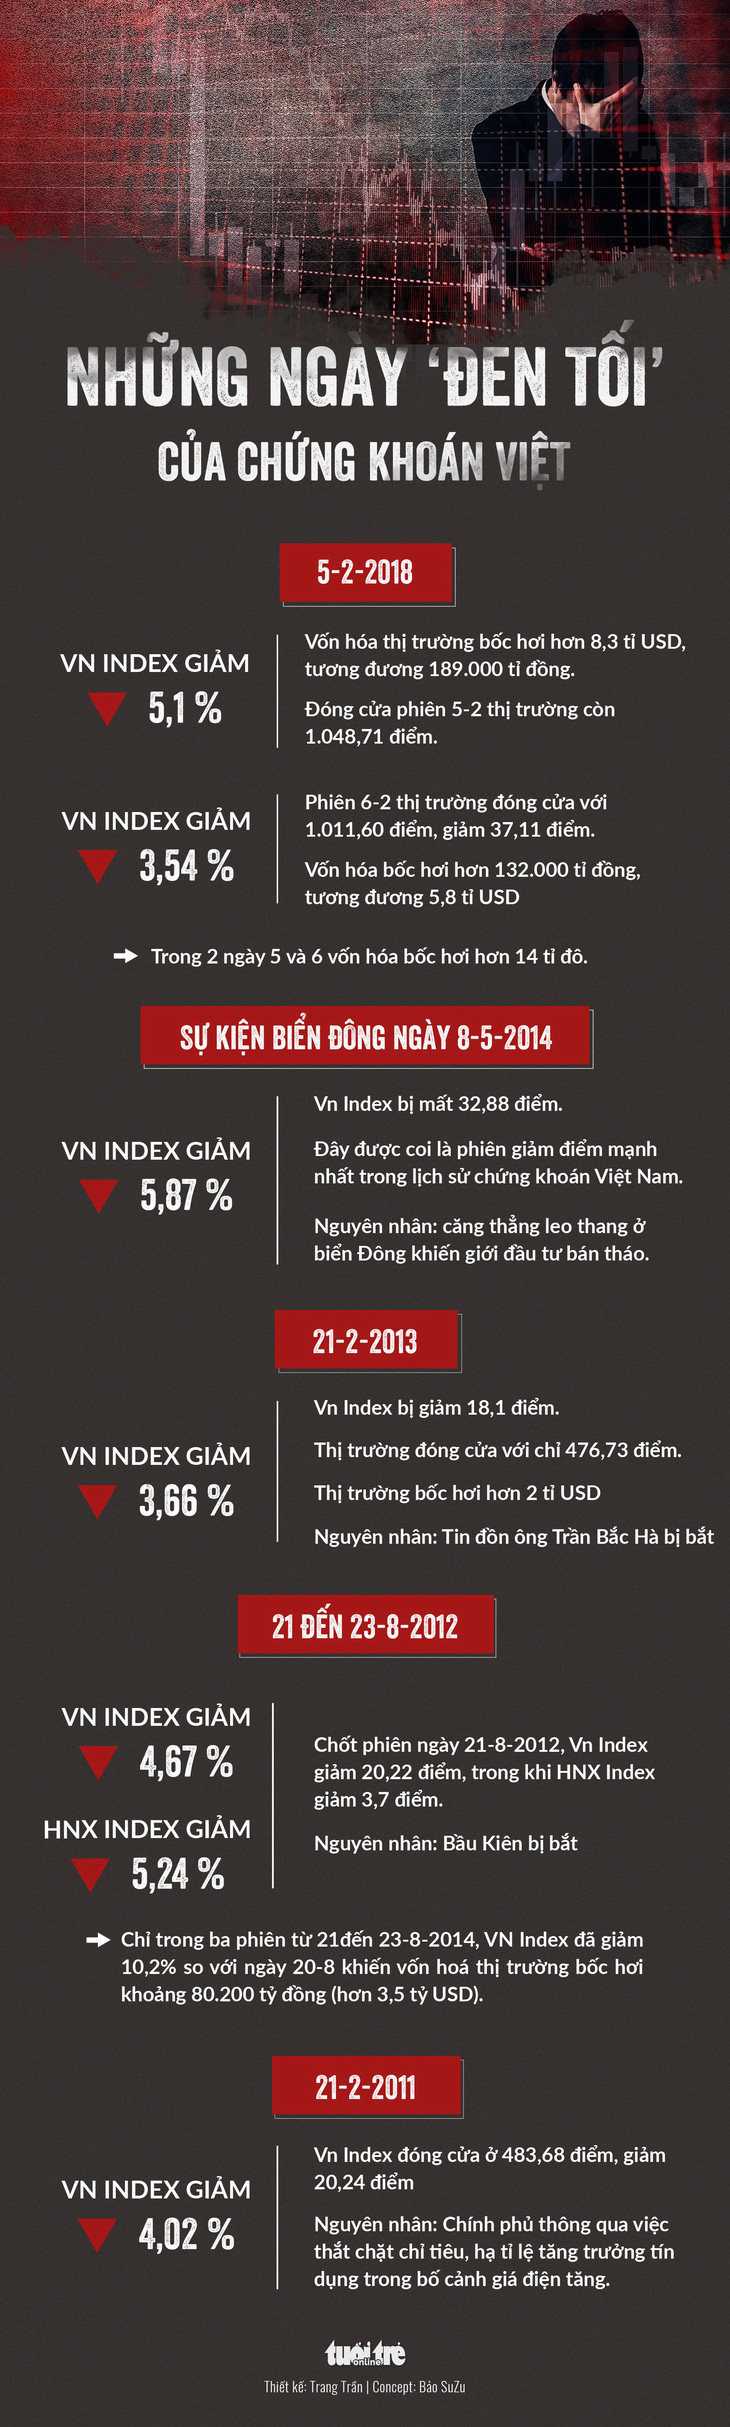 Hai ngày đen tối bốc hơi hơn 14 tỉ USD của chứng khoán Việt - Ảnh 1.